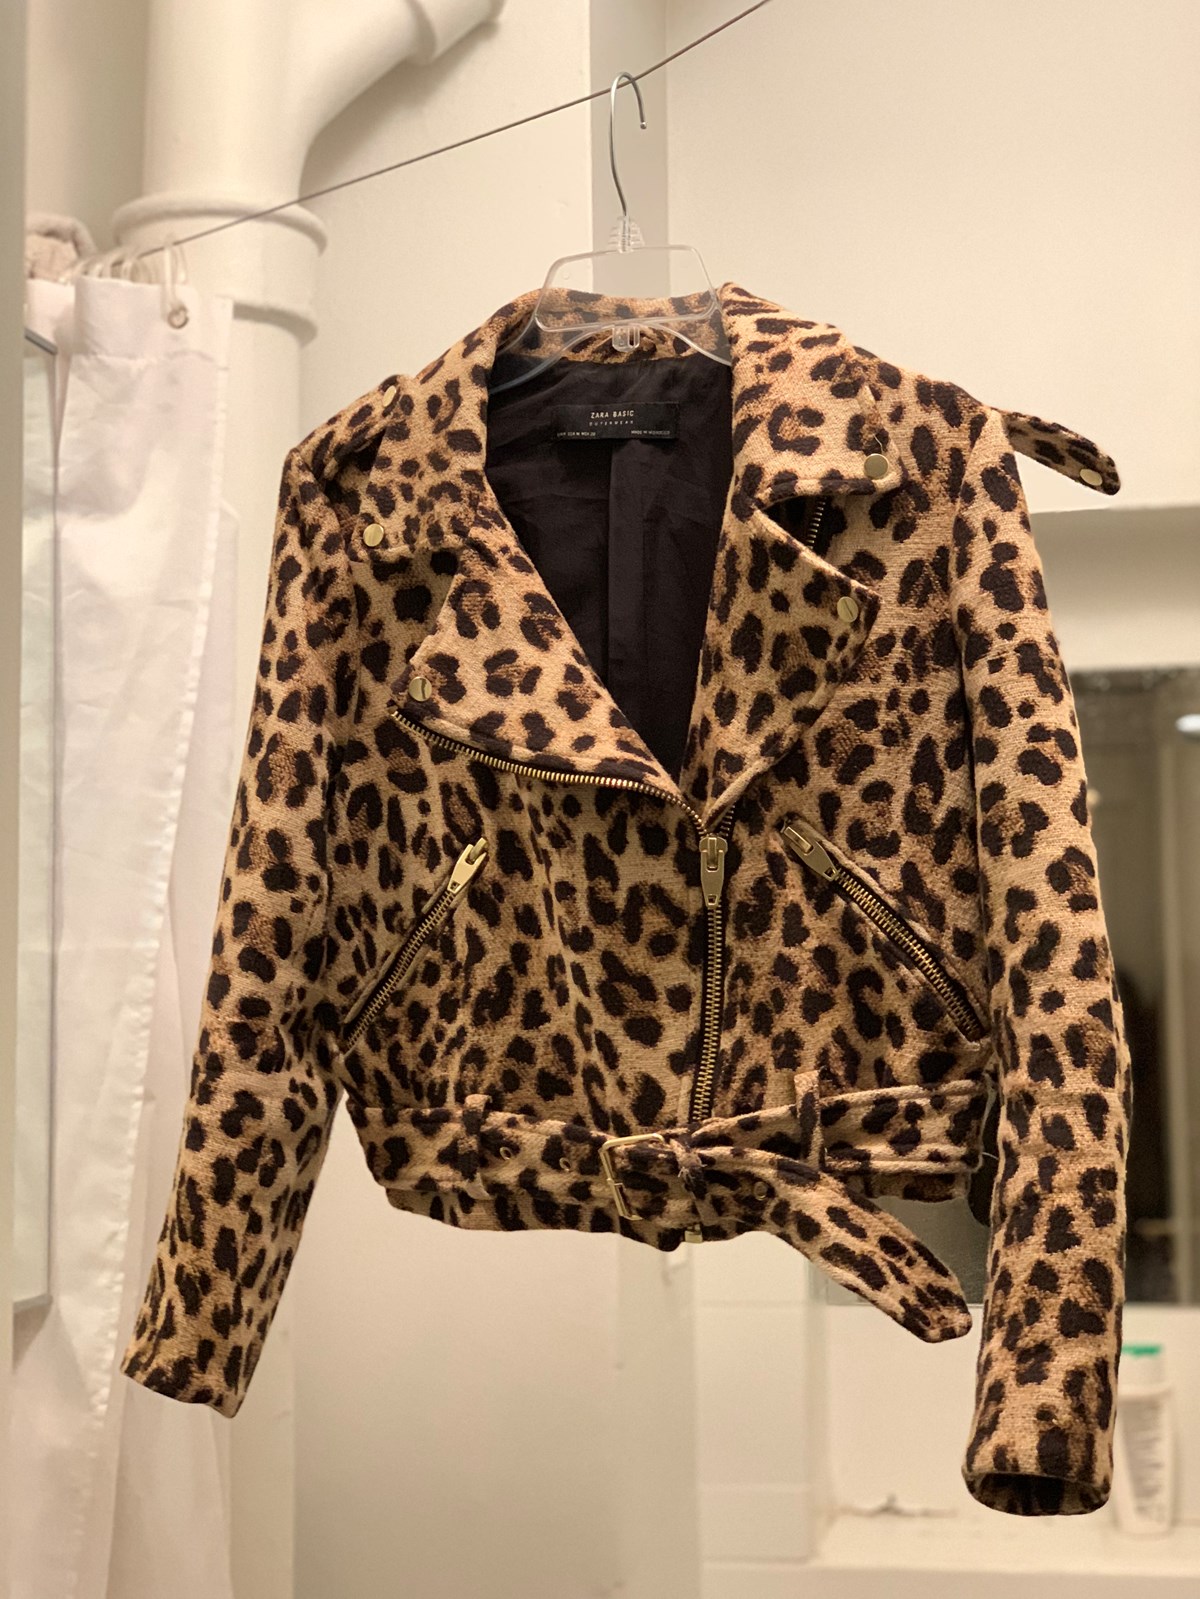 Denne leopardjakke er en af de ting, som Maja har fået solgt i forbindelse med sin rejse. Den er fra Zara, og Maja solgte jakken for 100 kroner